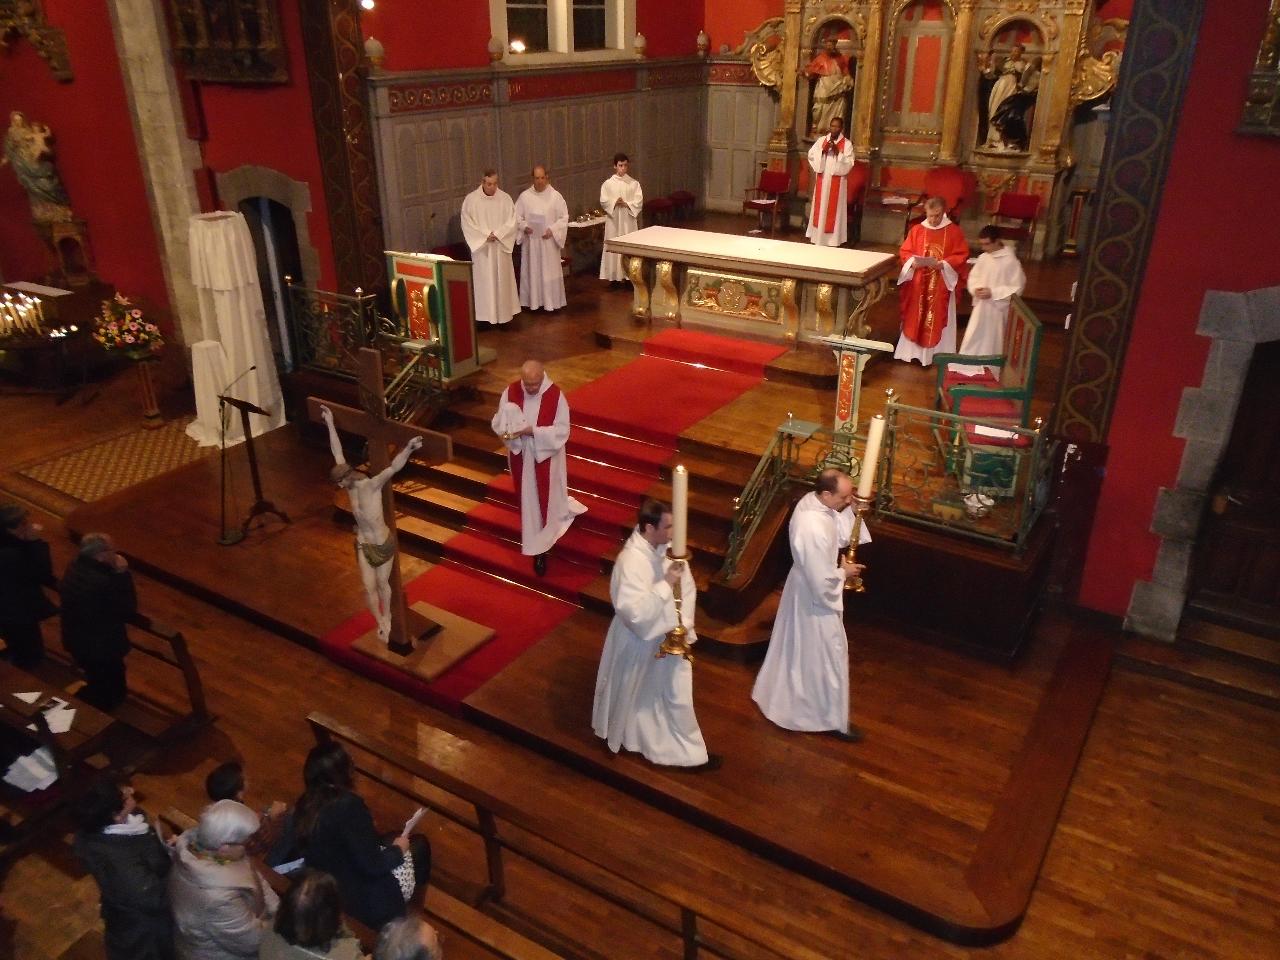 Après le communion, le Saint Sacrement est retiré de l'église jusqu'à la Veillée Pascale.